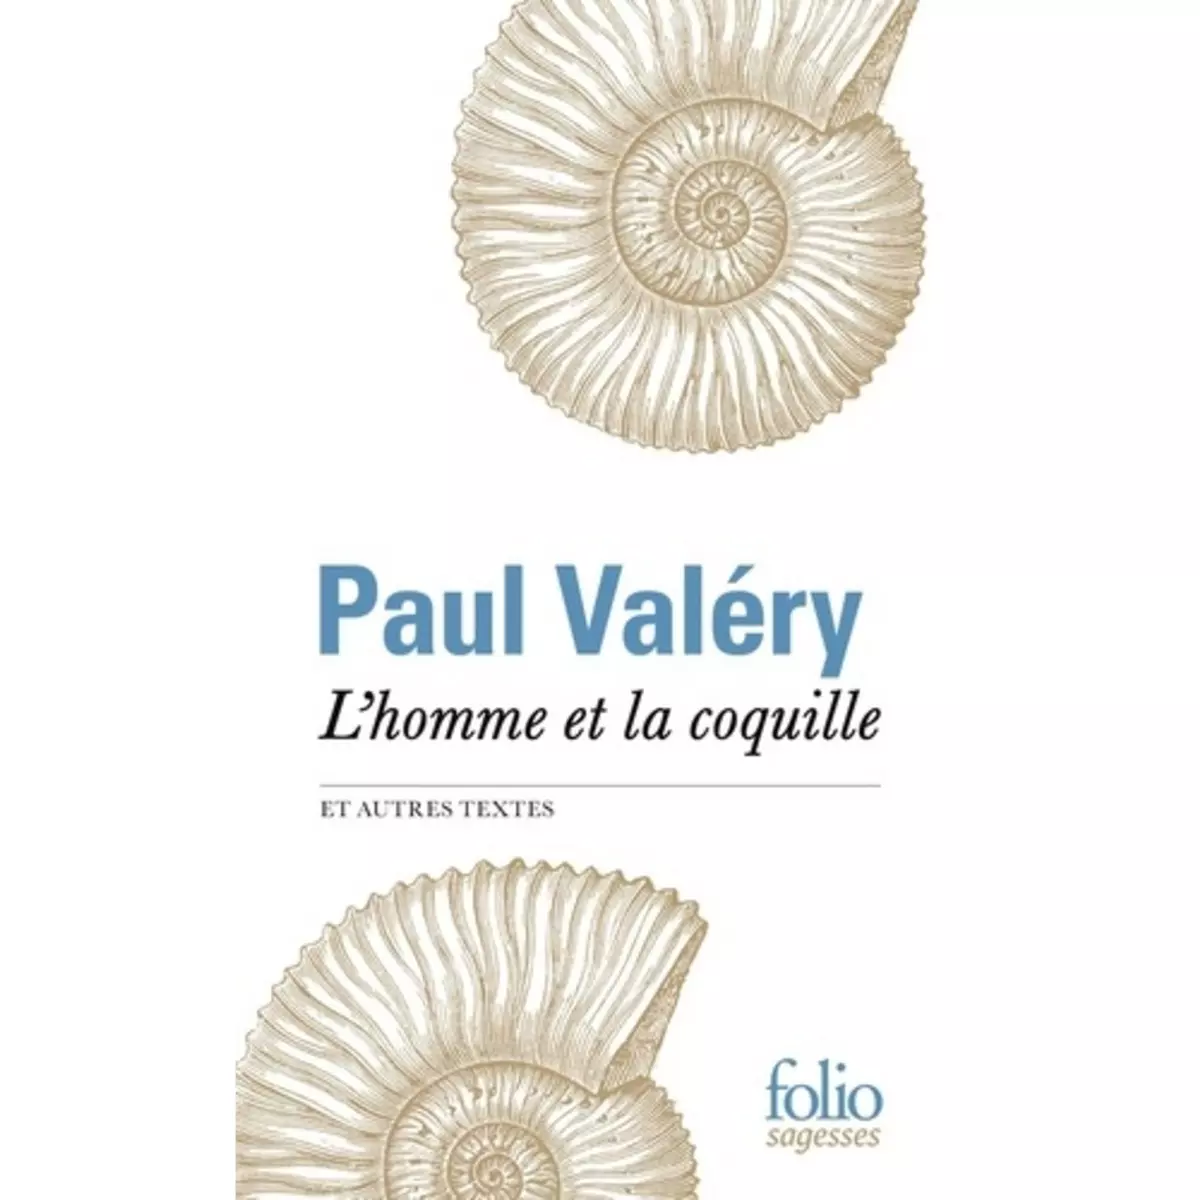  L'HOMME ET LA COQUILLE ET AUTRES TEXTES, Valéry Paul